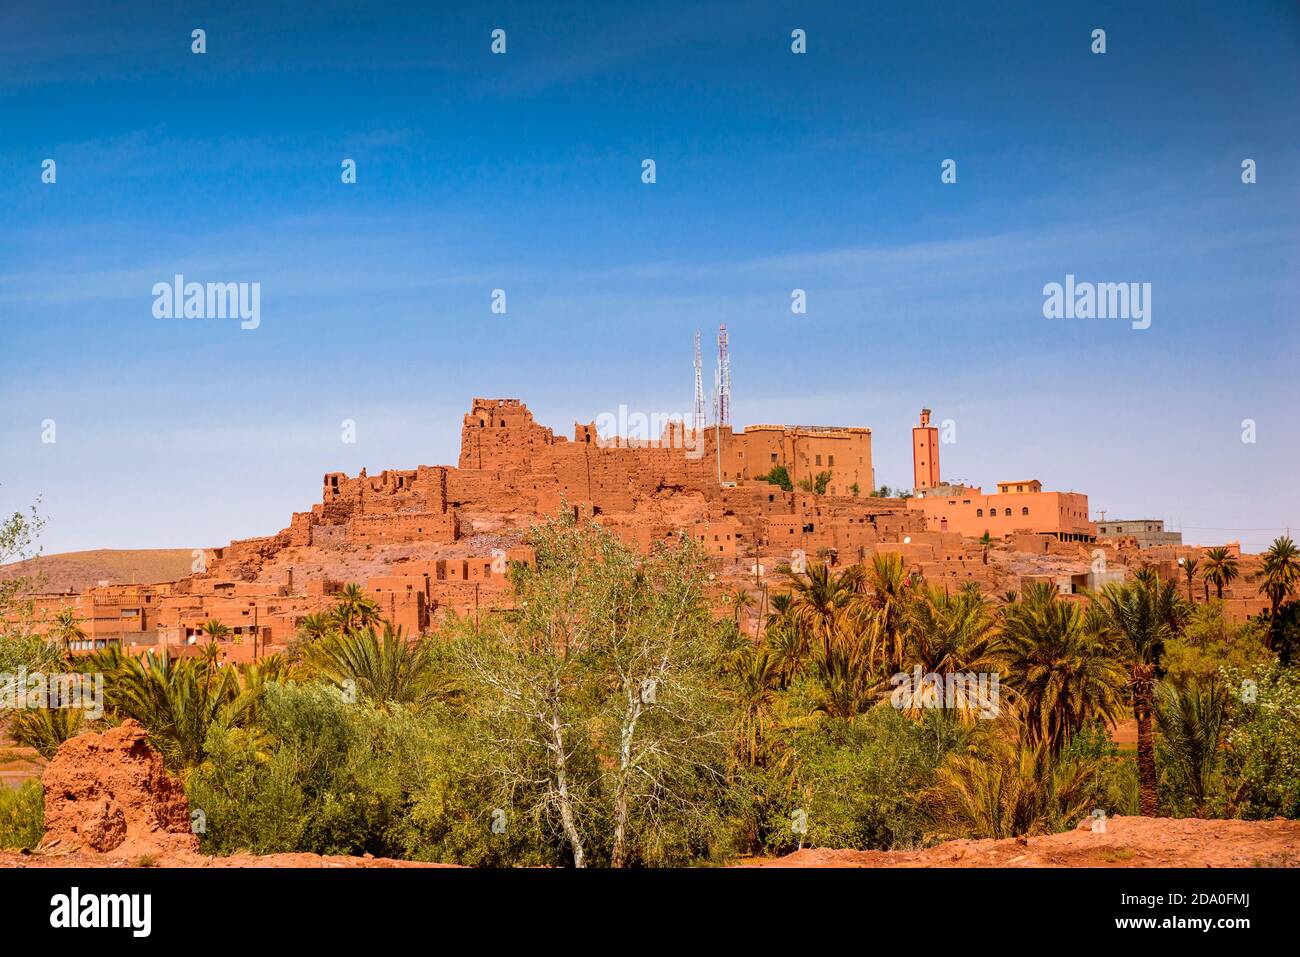 Die Kasbah von Tifoultoute ist eine Kasbah in der Provinz Ouarzazate, Marokko, die 8 Kilometer westlich der Stadt Ouarzazate liegt. Diese Festung gehörte zu t Stockfoto